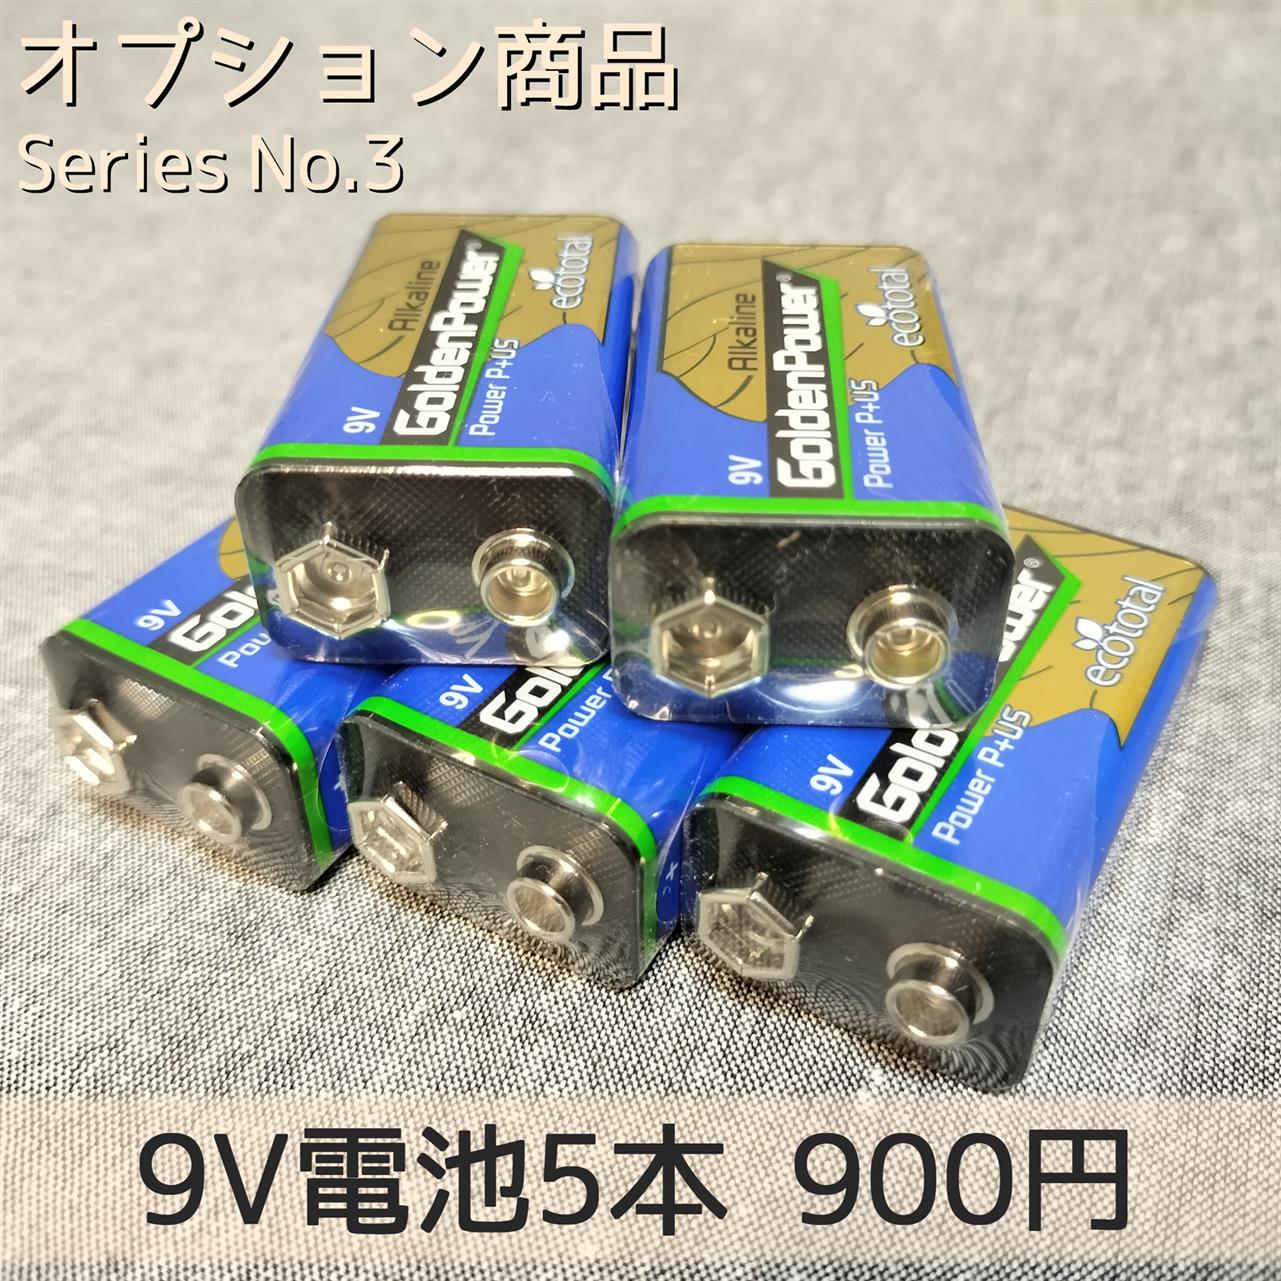 【オプション】9V電池